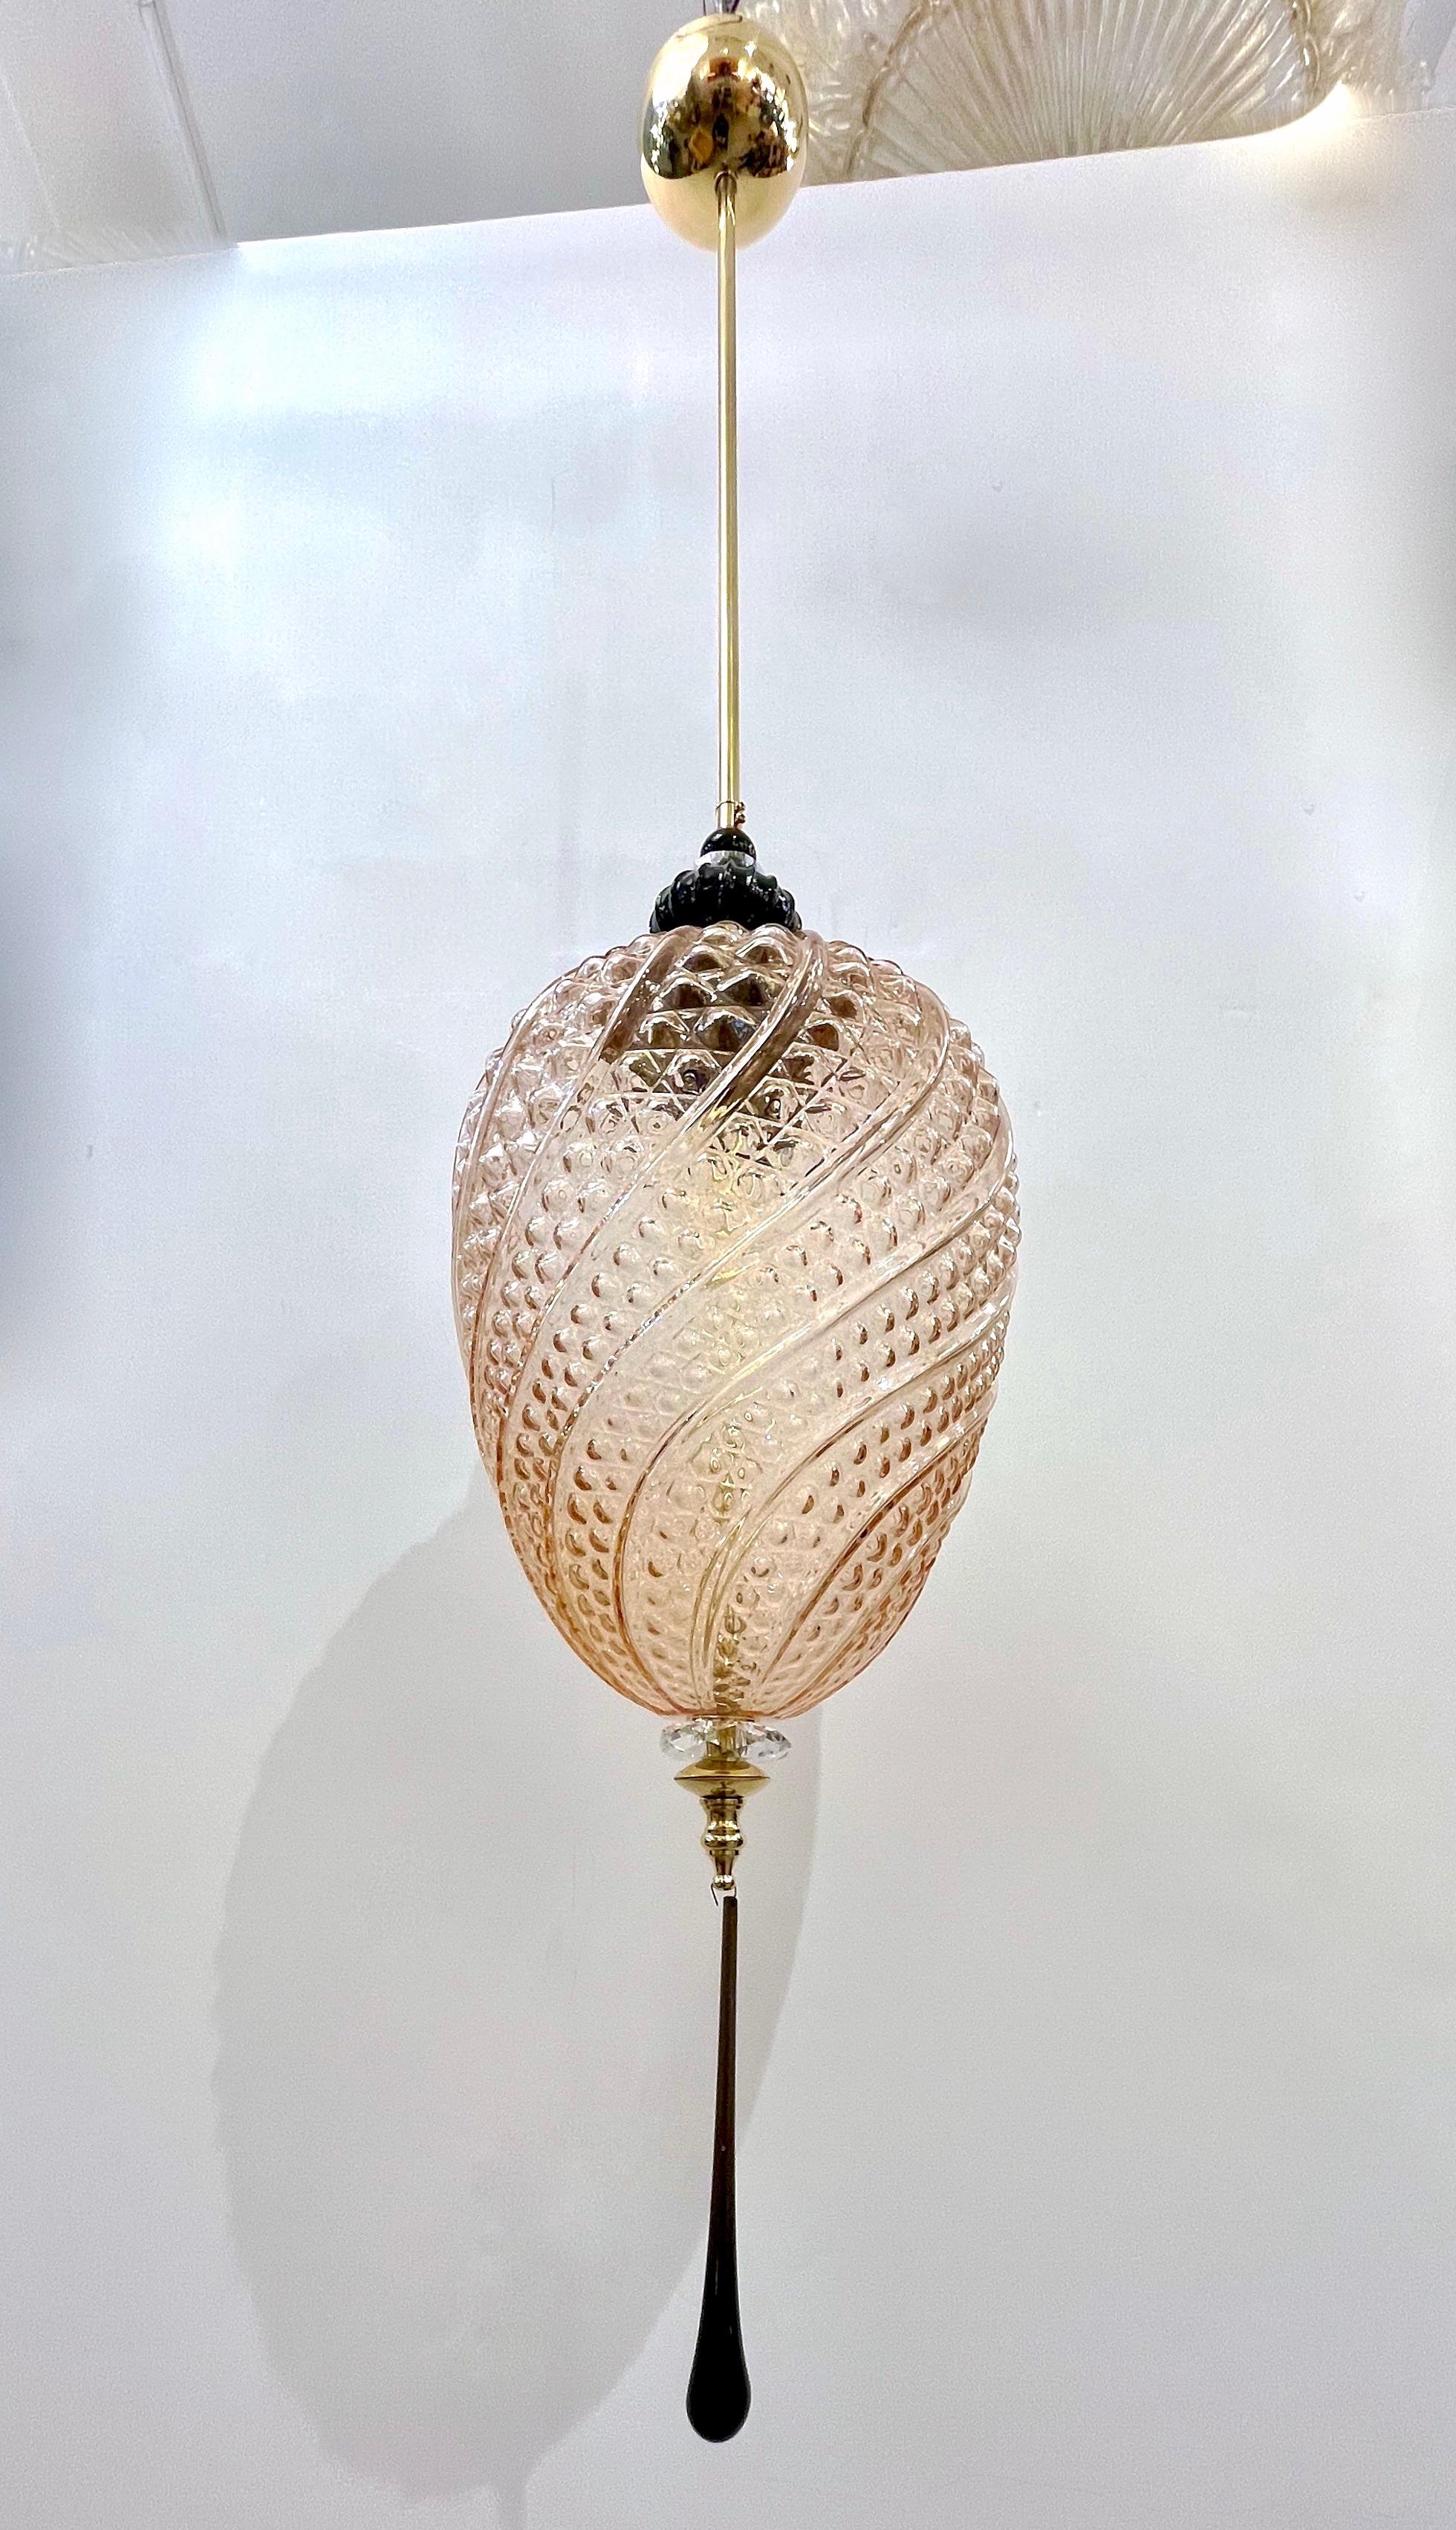 Luminaire à lanterne de style orientaliste contemporain, d'une série géométrique vénitienne moderne avec 4 formes selon les images, entièrement fait sur mesure en Italie, ici avec des ferrures en laiton, le globe organique en forme d'œuf dans un